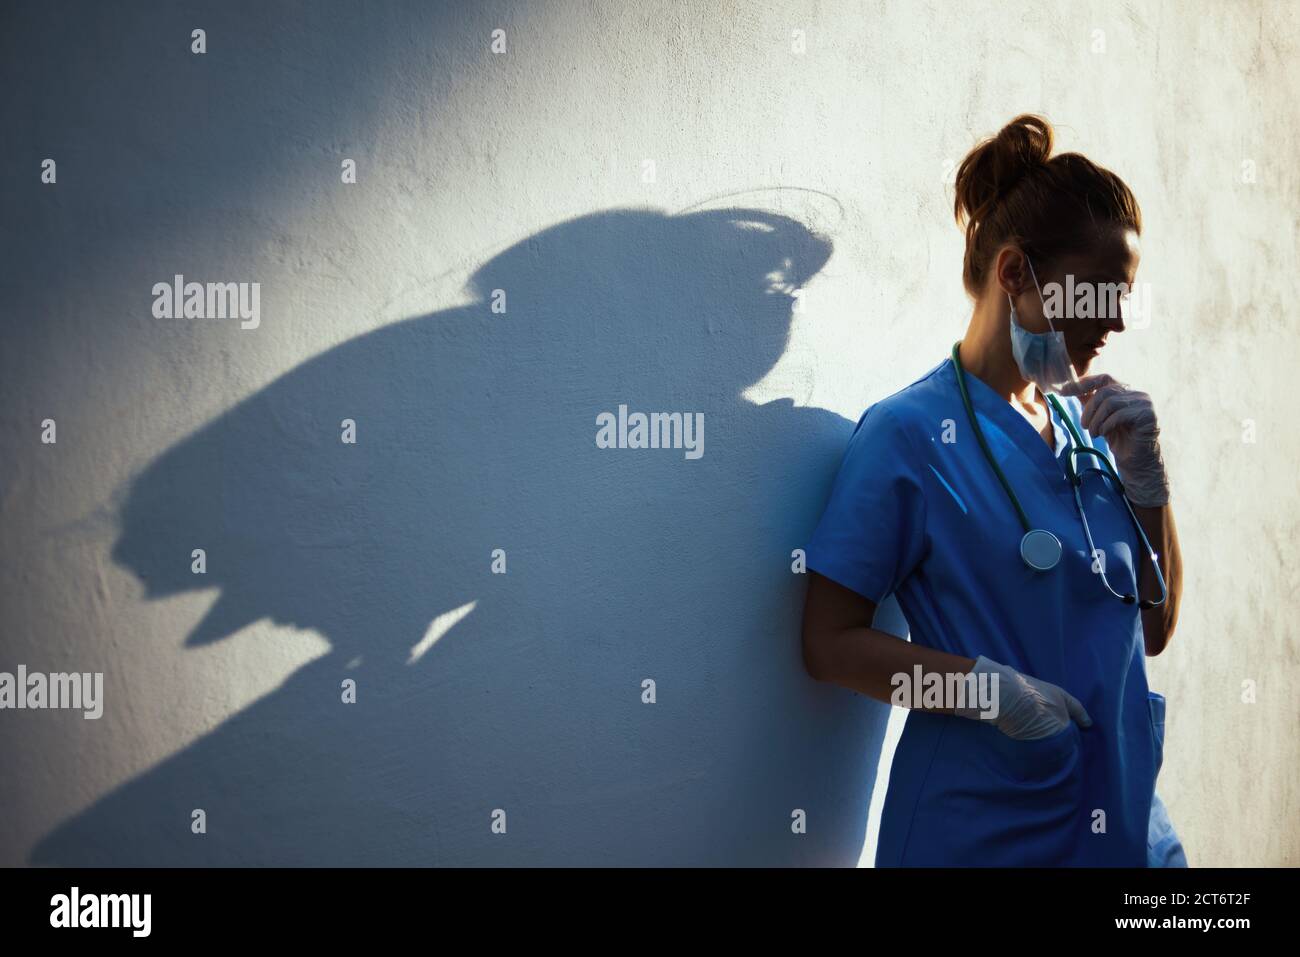 pandemia de coronavirus. mujer médica moderna estresada en peelings con estetoscopio, máscara médica y guantes de goma al aire libre en la ciudad cerca de la pared. Foto de stock